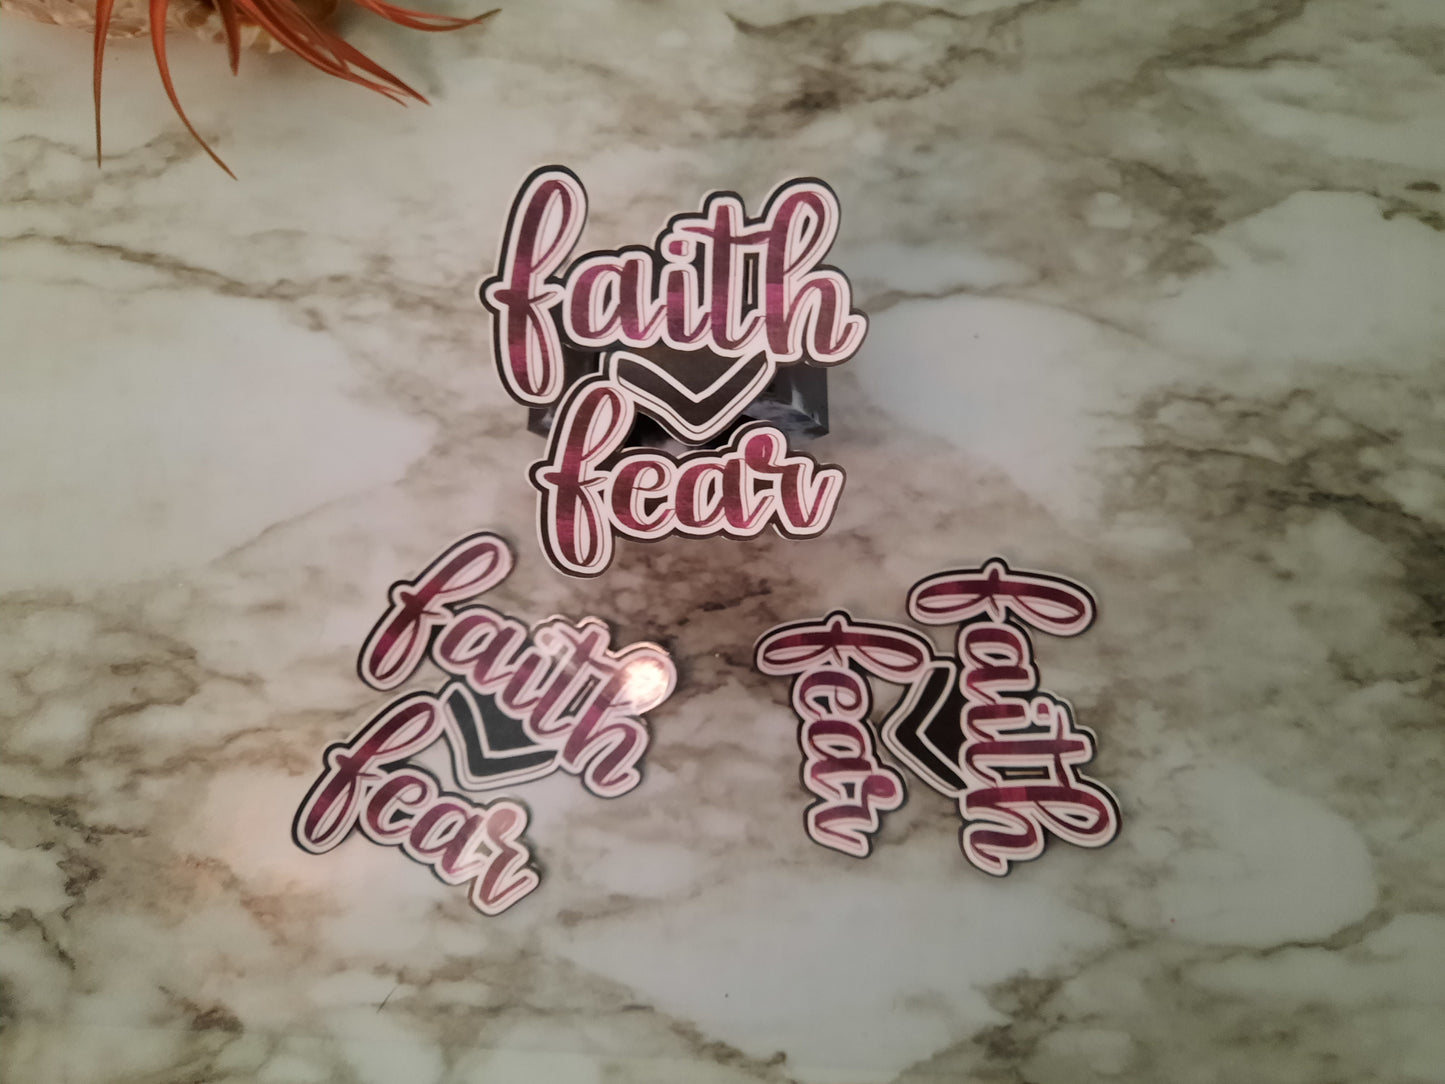 Faith Over Fear Stickers